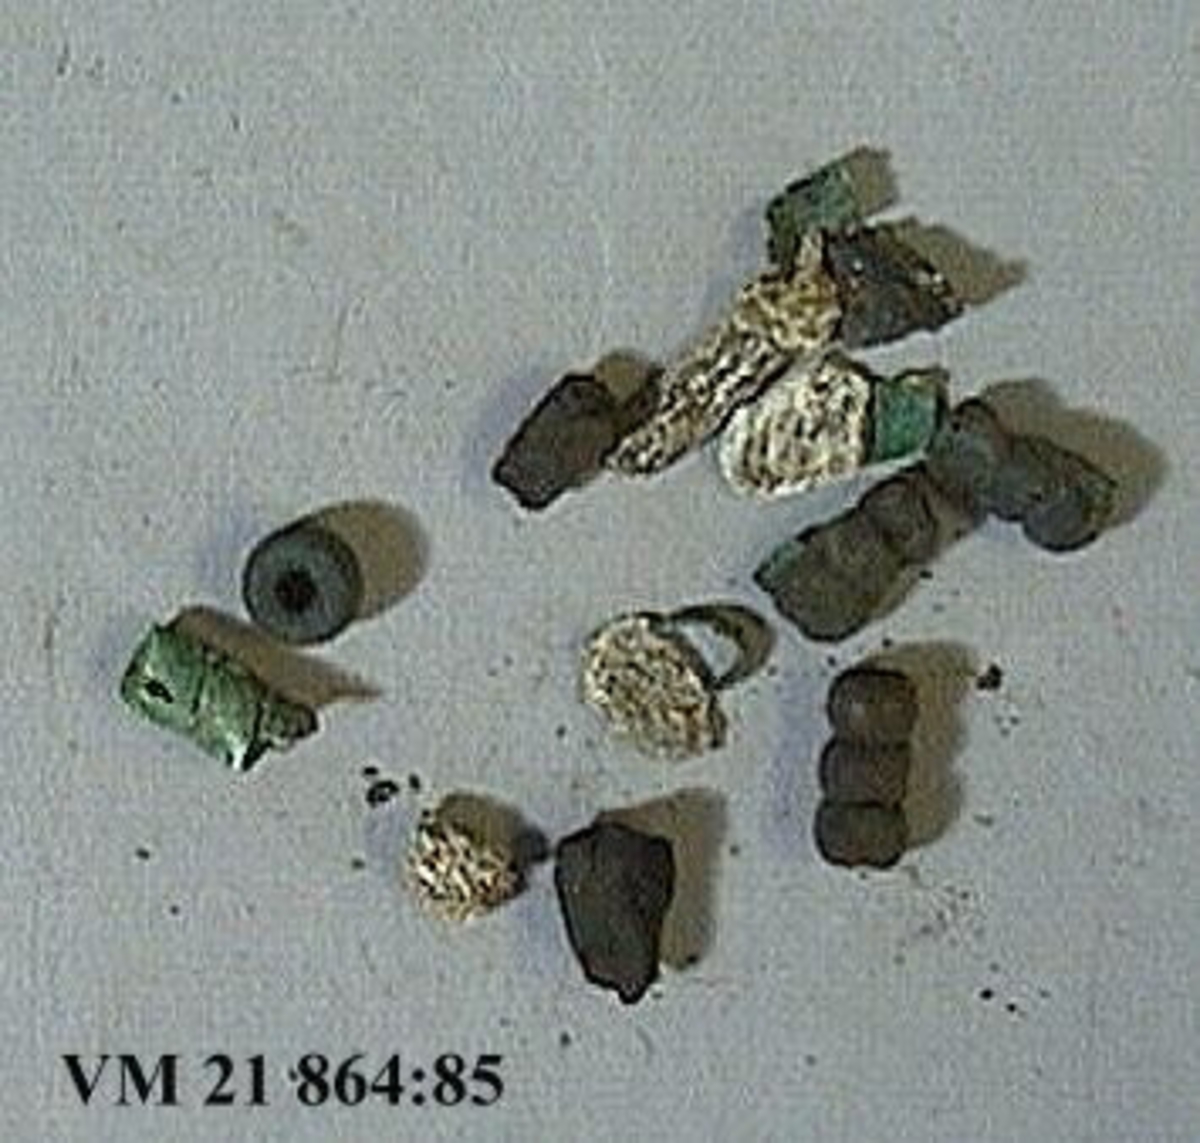 Fyra glaspärlor. Delvis brandskadade. Tre av pärlorna består var och en av tre sammansatta pärlor.

Mått: 1,5 x 0,7 cm. - 0,9 x 0,7 cm.

Bronsspiral från vilken ett antal fragment fallit. Mått: L. 1,4 cm. Diam. 0,6 cm.

Två kolbitar. Mått: 1,3 x 1 cm. - 1 x 0,6 cm.

Fem fragment av bränt ben. Mått: 1,7 x 0,6 cm. - 0,9 x 0,8 cm.

En keramikskärva. Mått: 1 x 0,8 cm.



Omärkta fynd men placerade i särskild ask bland keramik VM 21 864:83